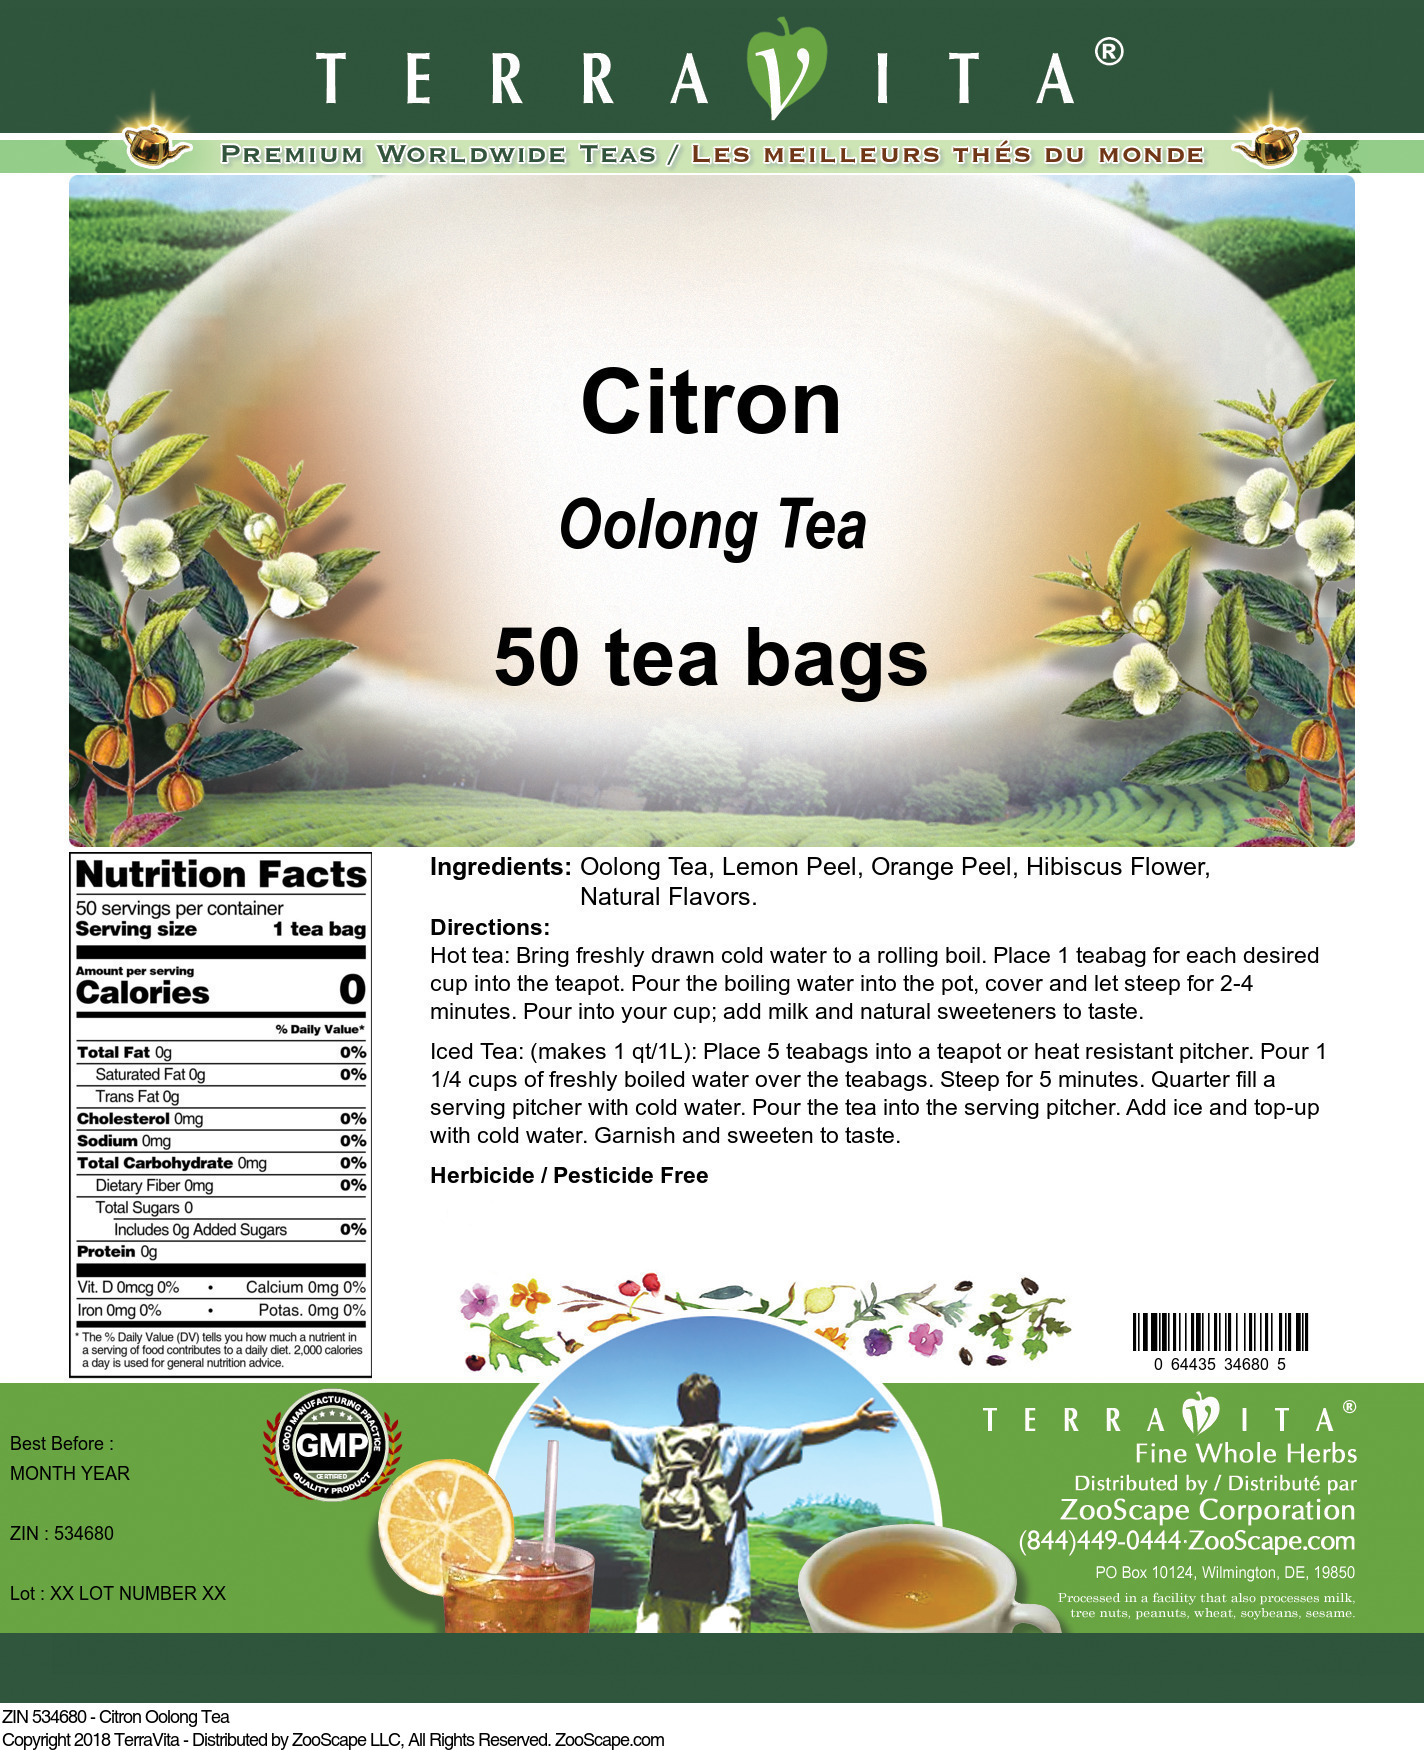 Citron Oolong Tea - Label